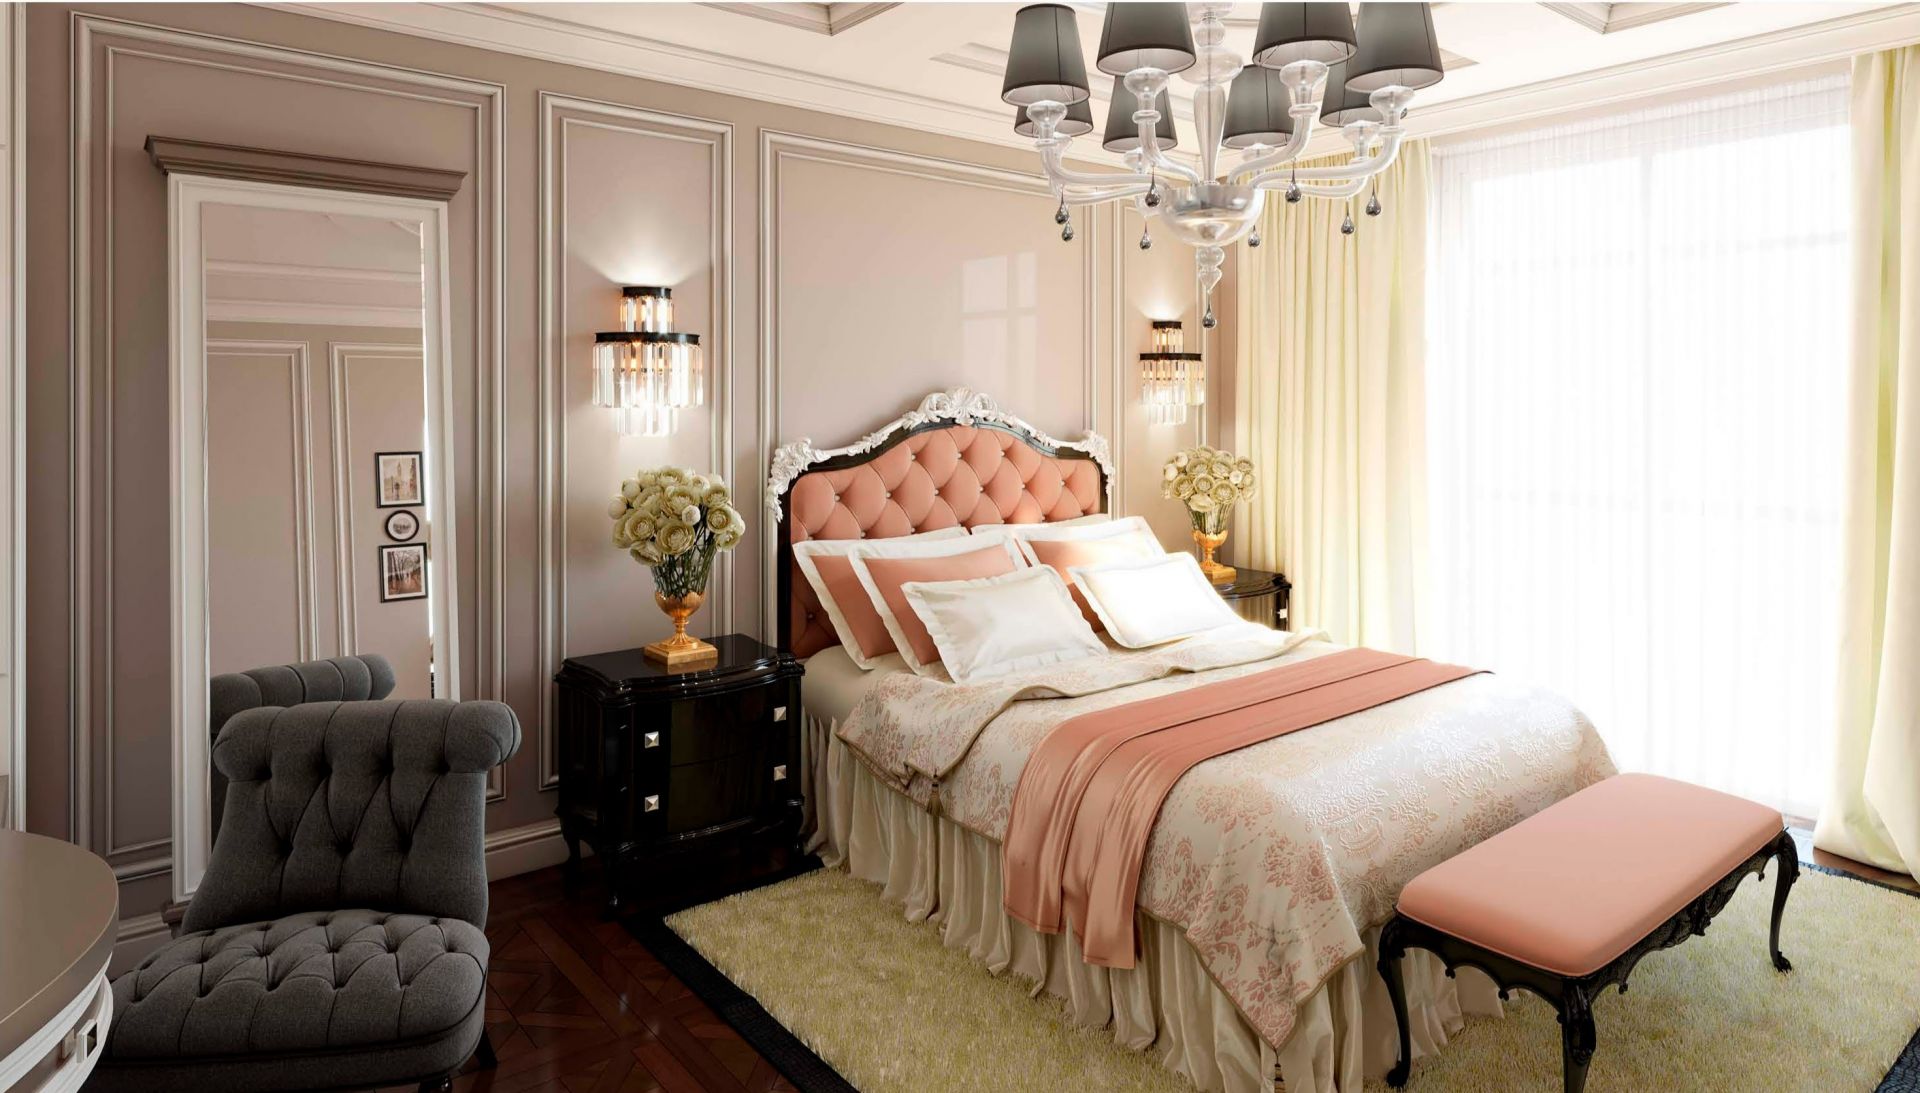 Chiếc giường mang phong cách tân cổ điển trở nên nổi bật với màu cam đào